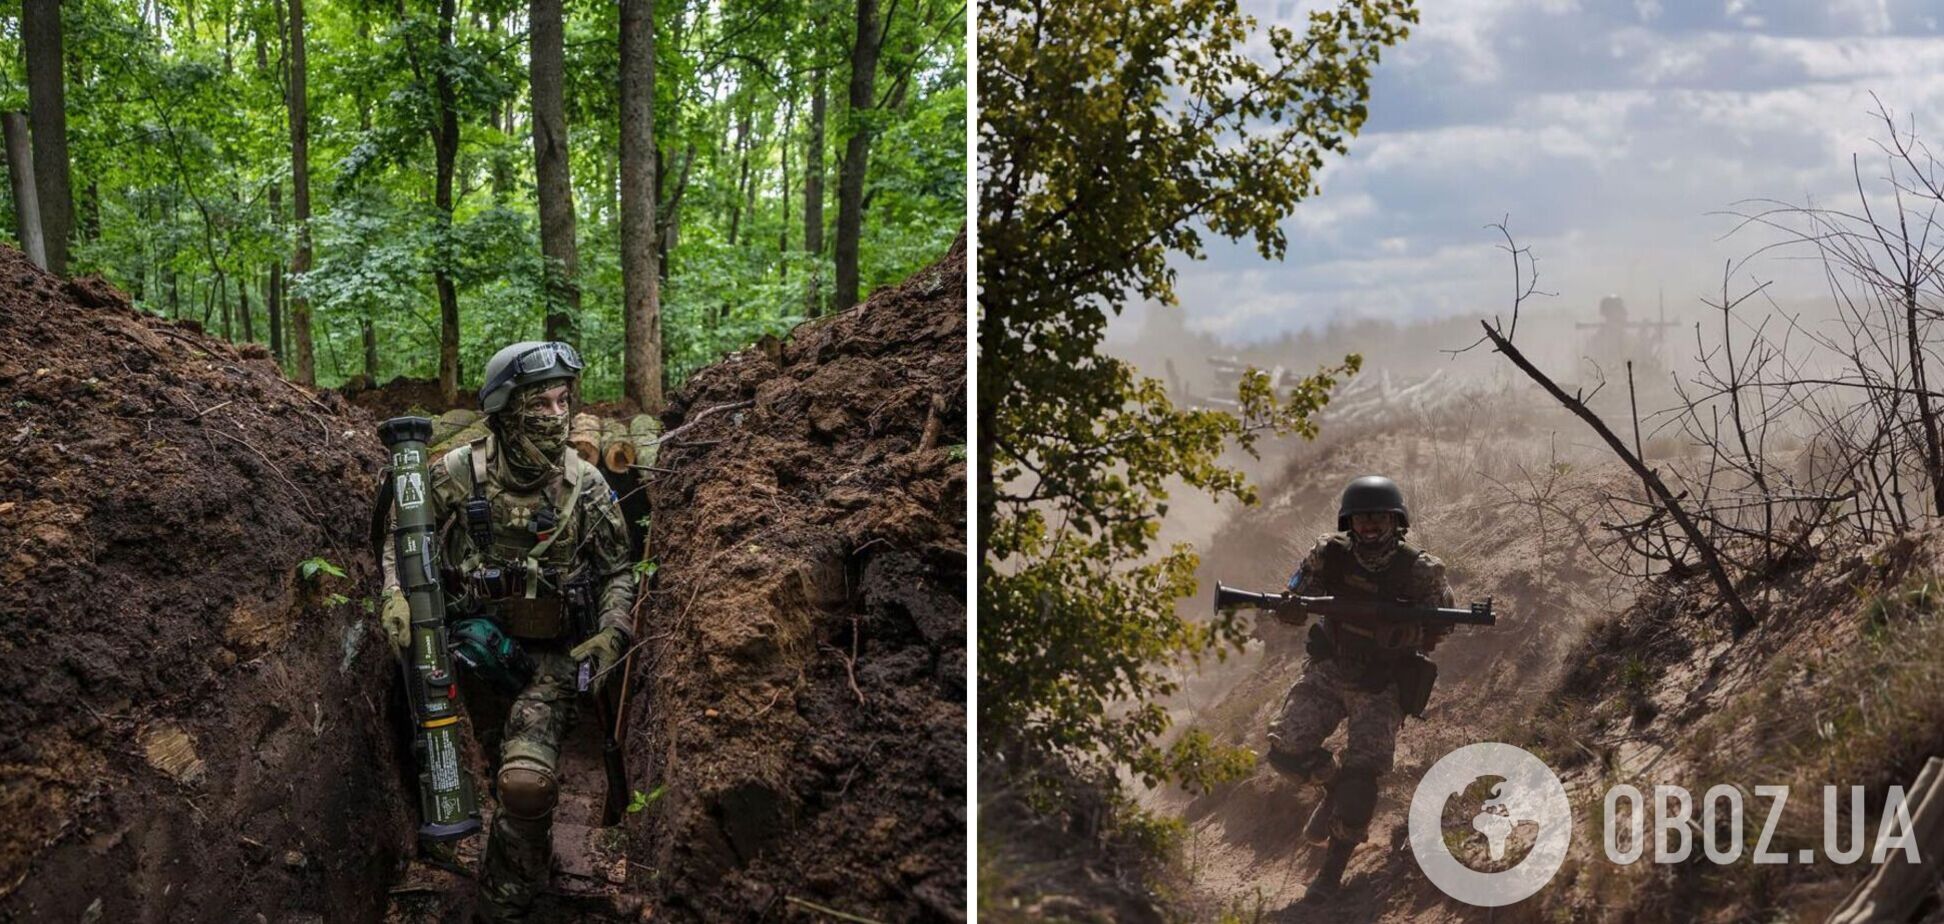 Зеленський показав фото воїнів, які захищають Україну: ніхто не очікував сміливості такого масштабу